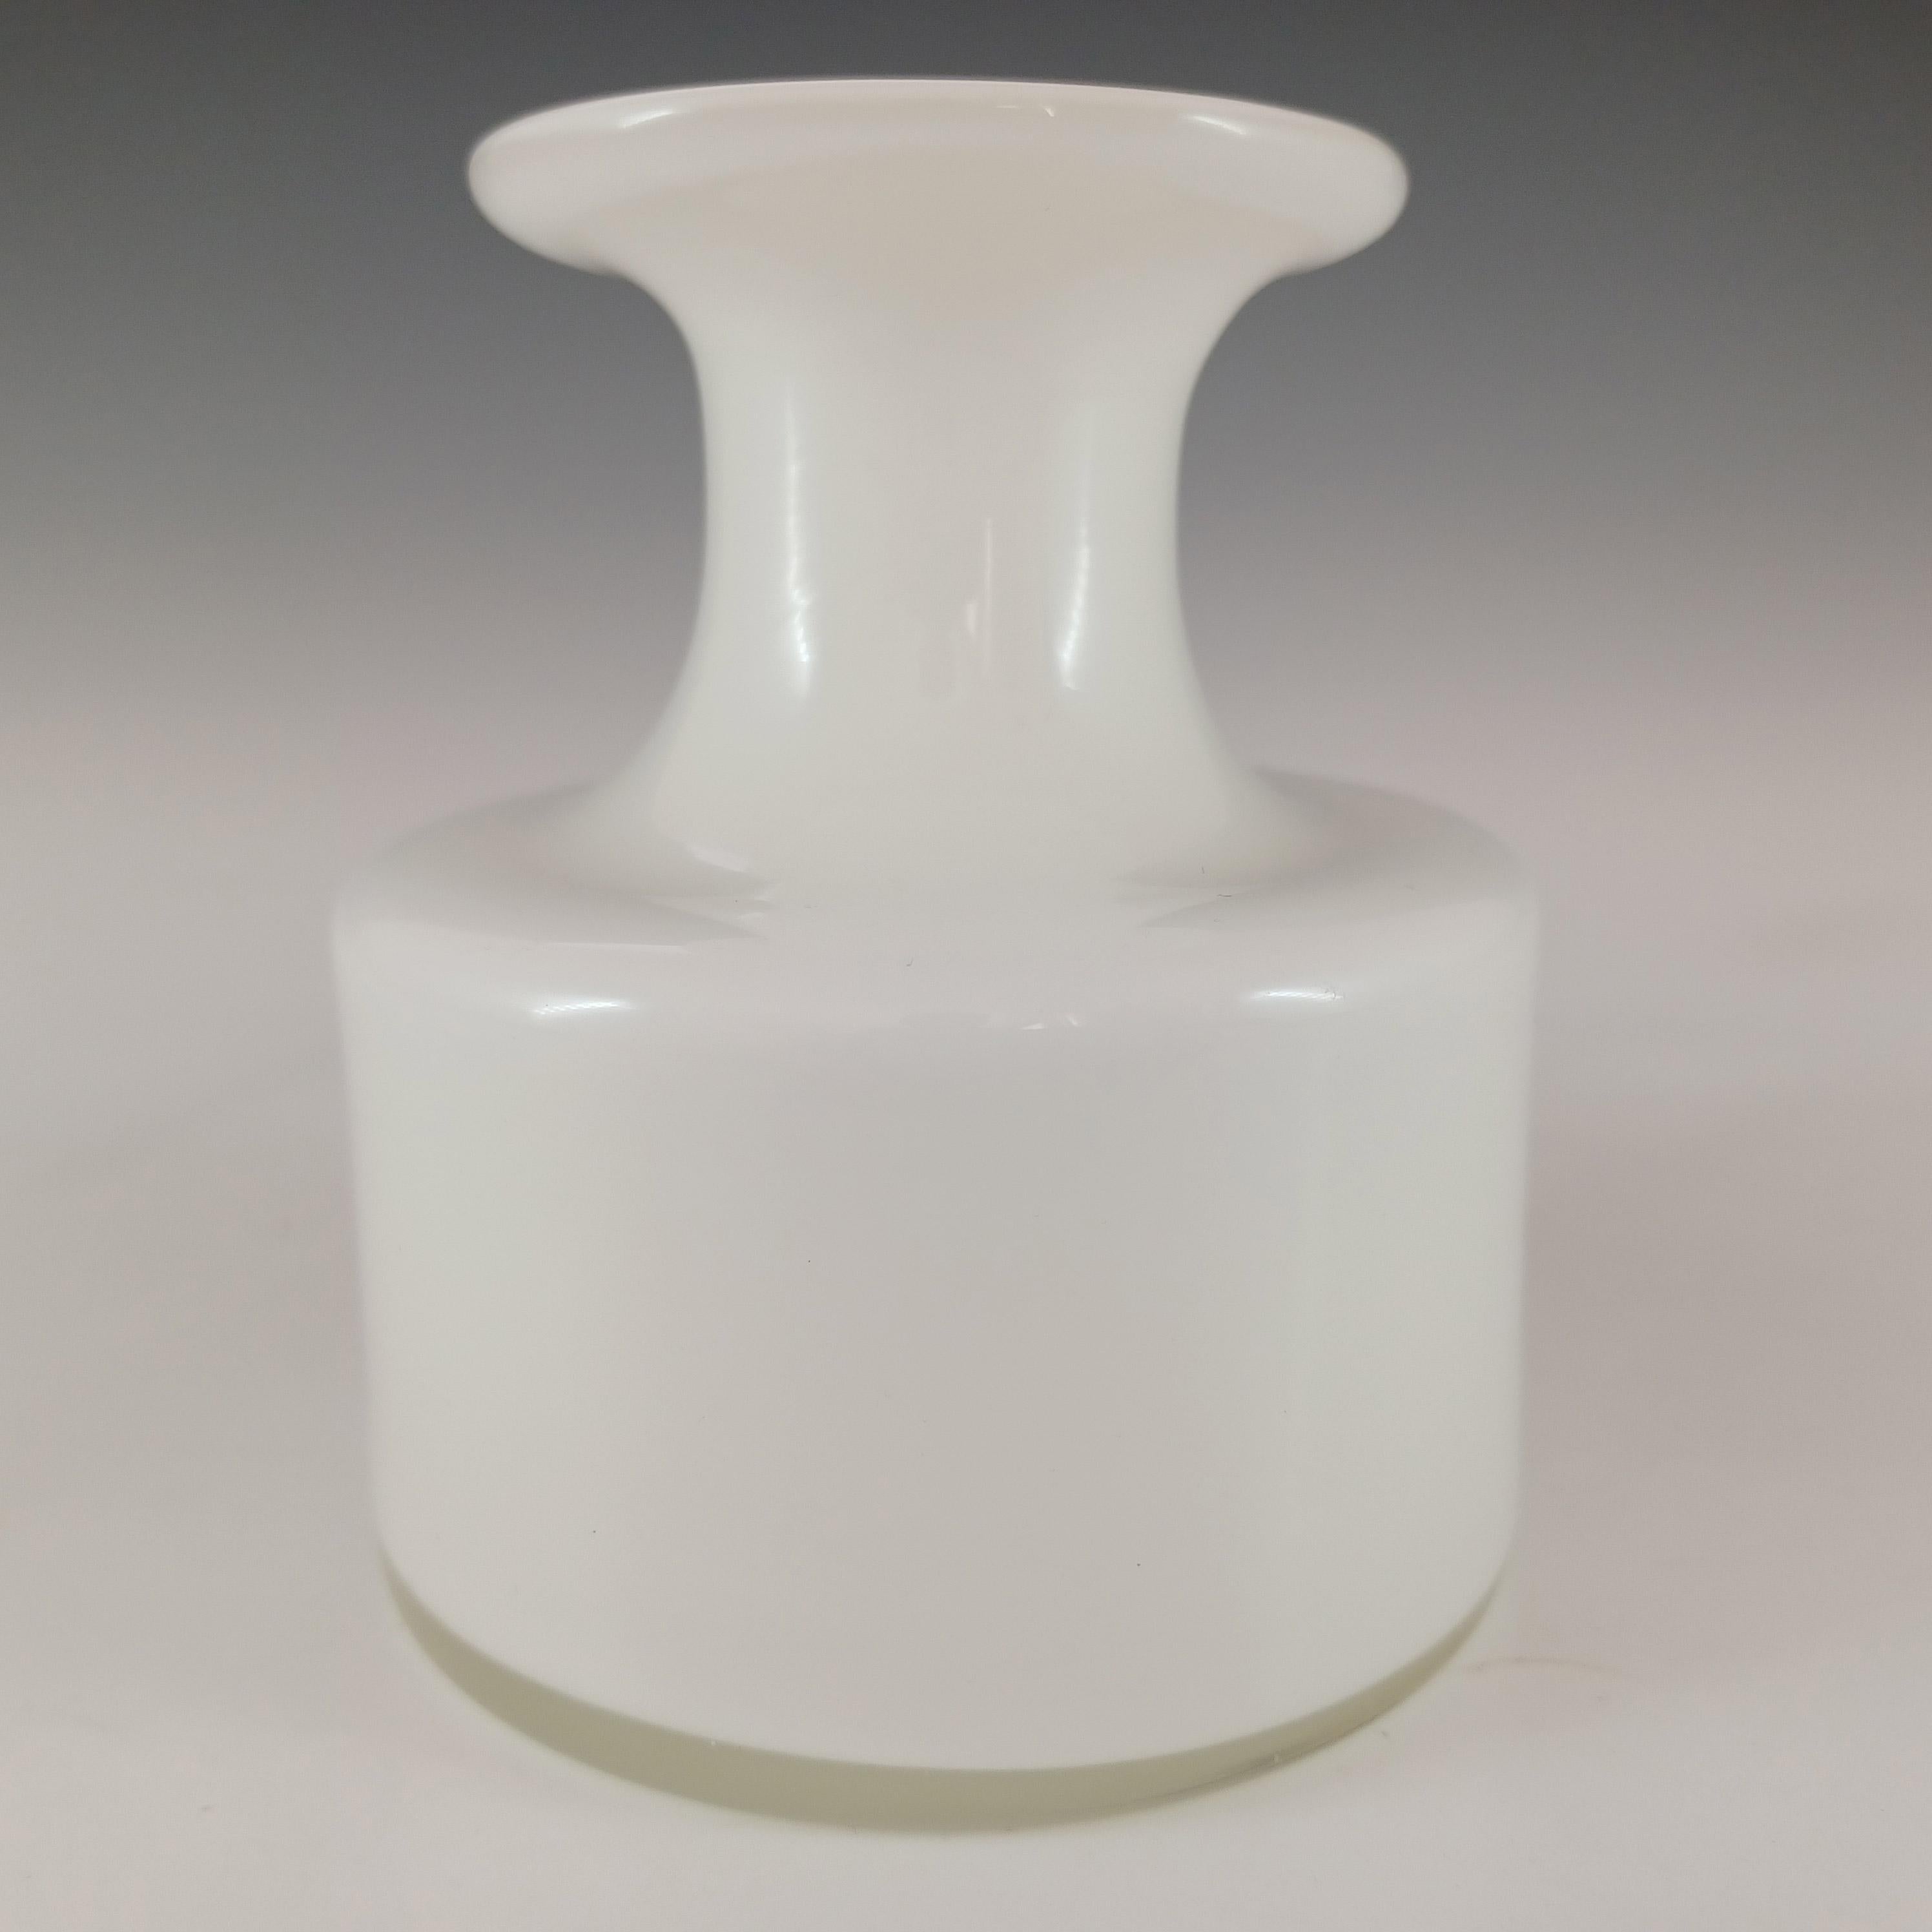 Un superbe vase scandinave en verre blanc opalin. Fabriqué par la société danoise Holmegaard, conçu par Per Lutken, faisant partie de sa gamme 